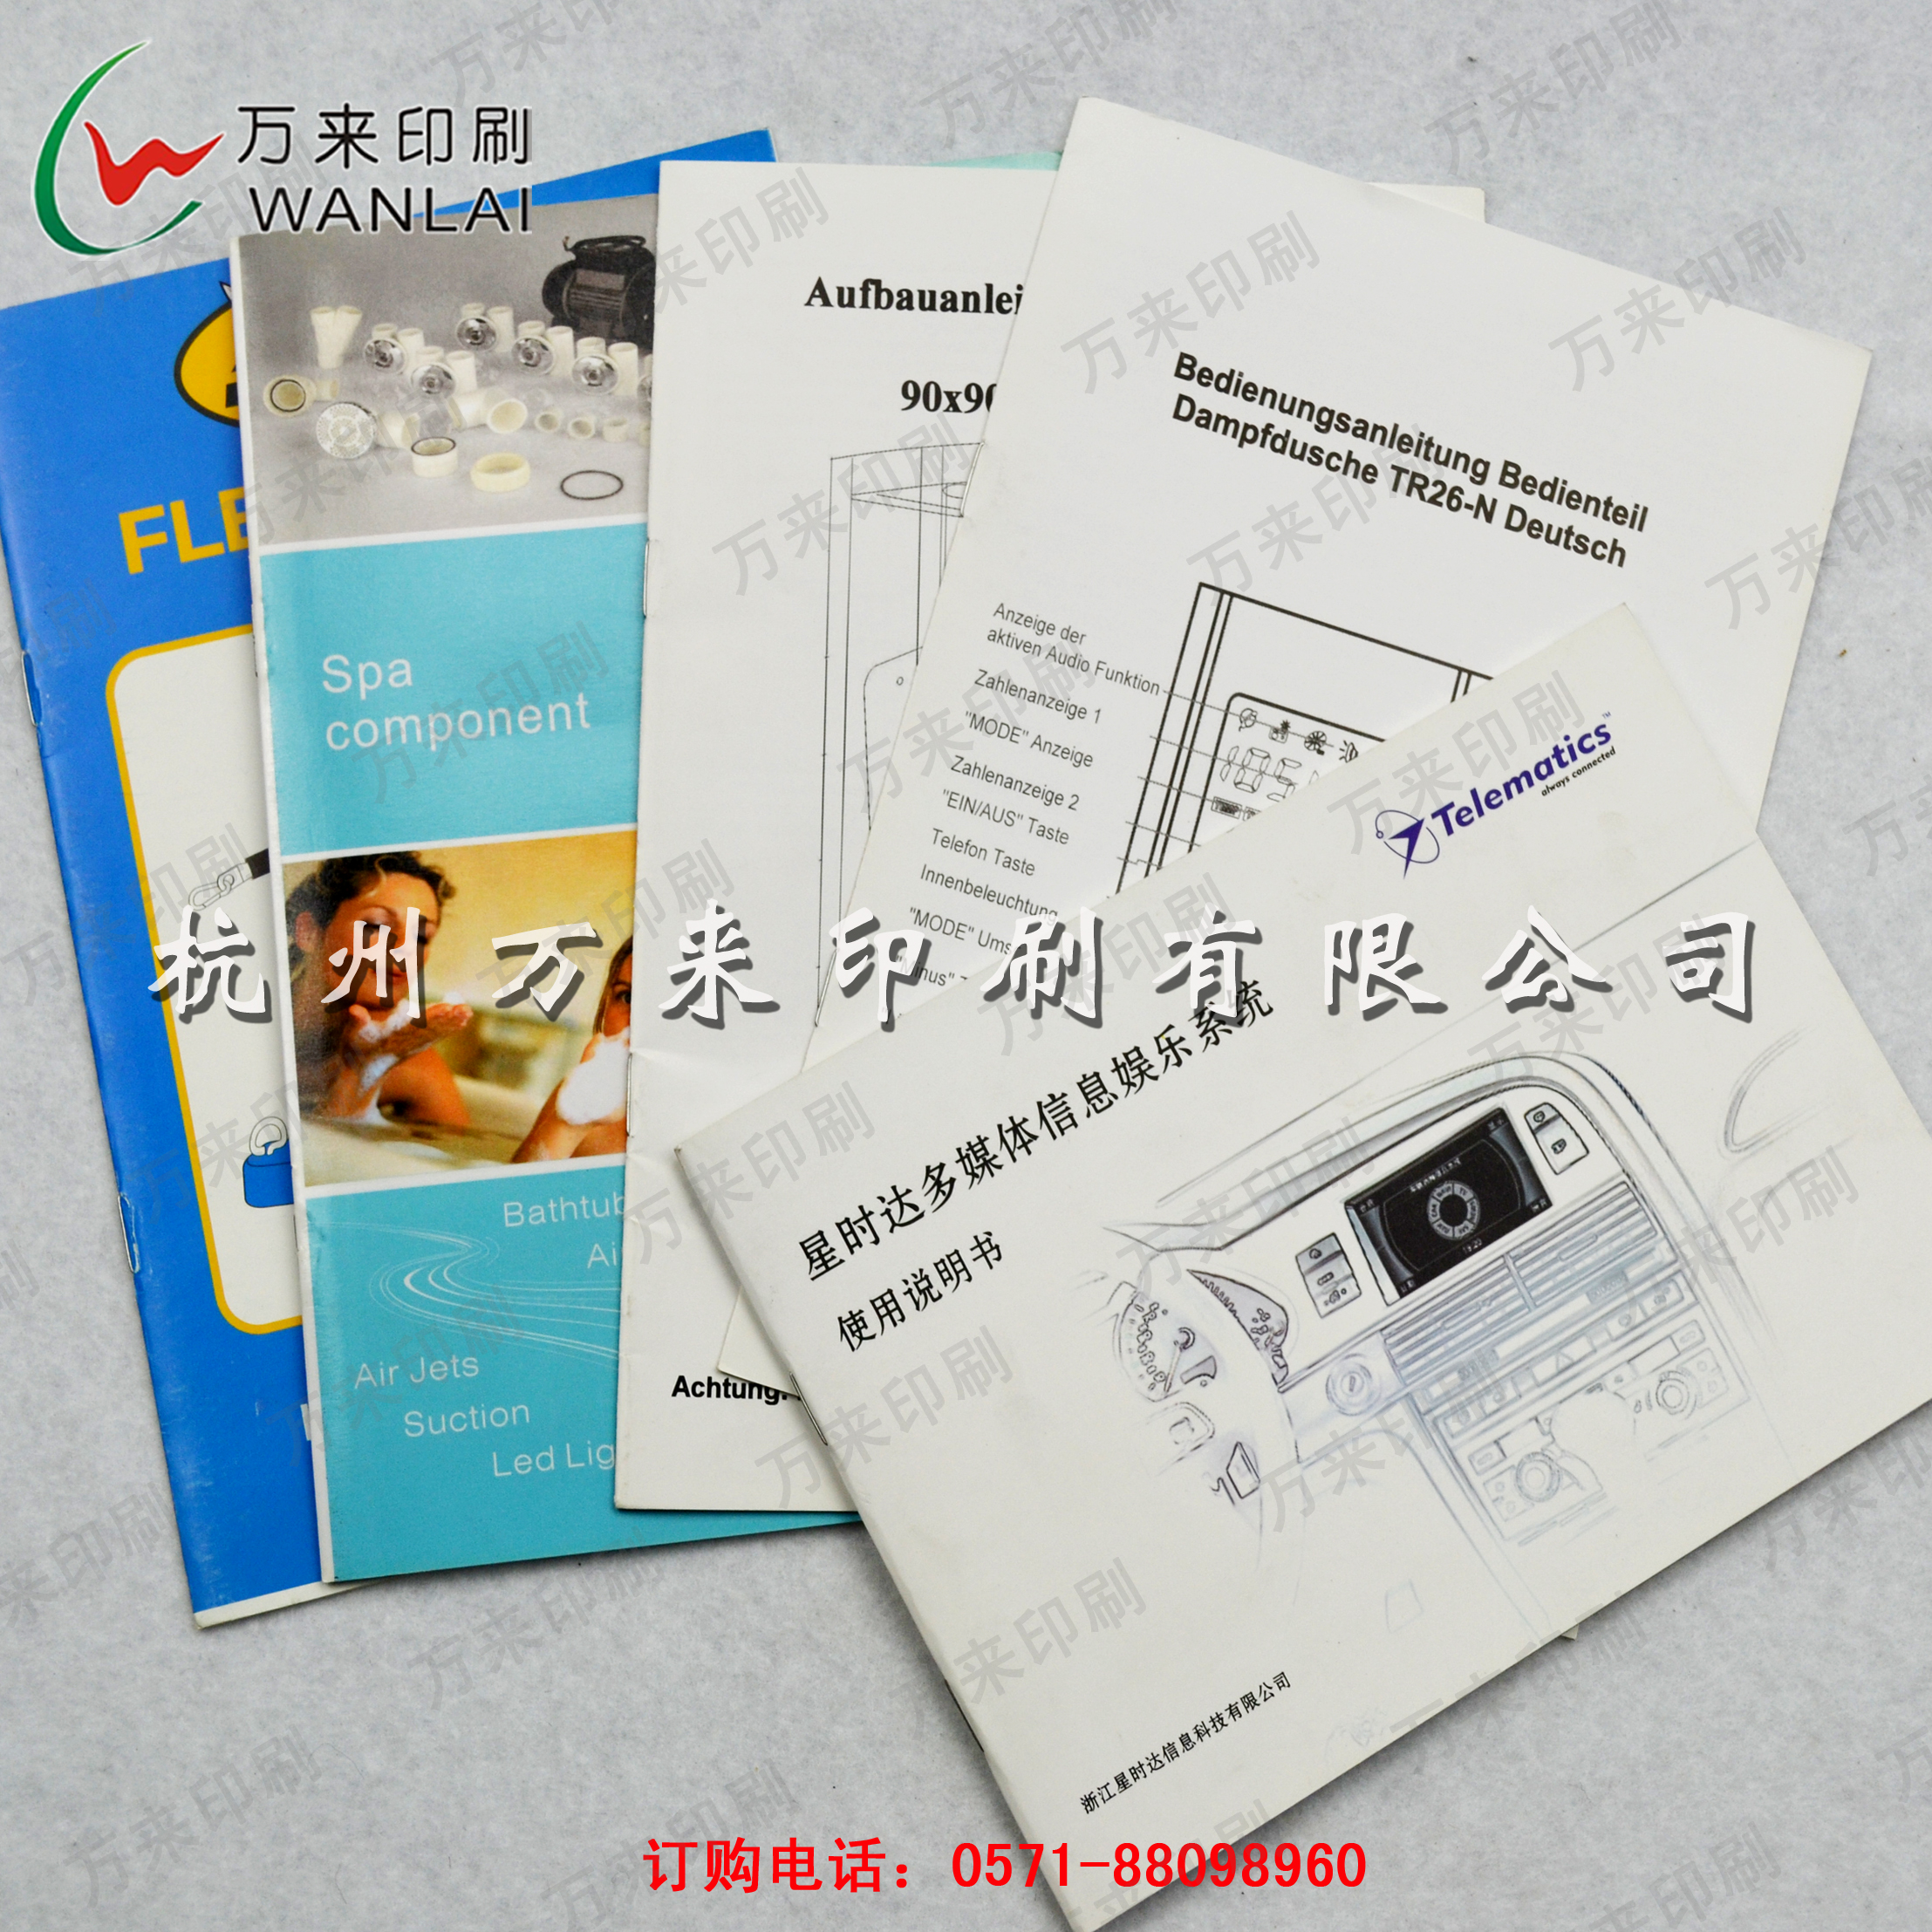 杭州市骑马钉 胶装说明书印刷 质优价平厂家